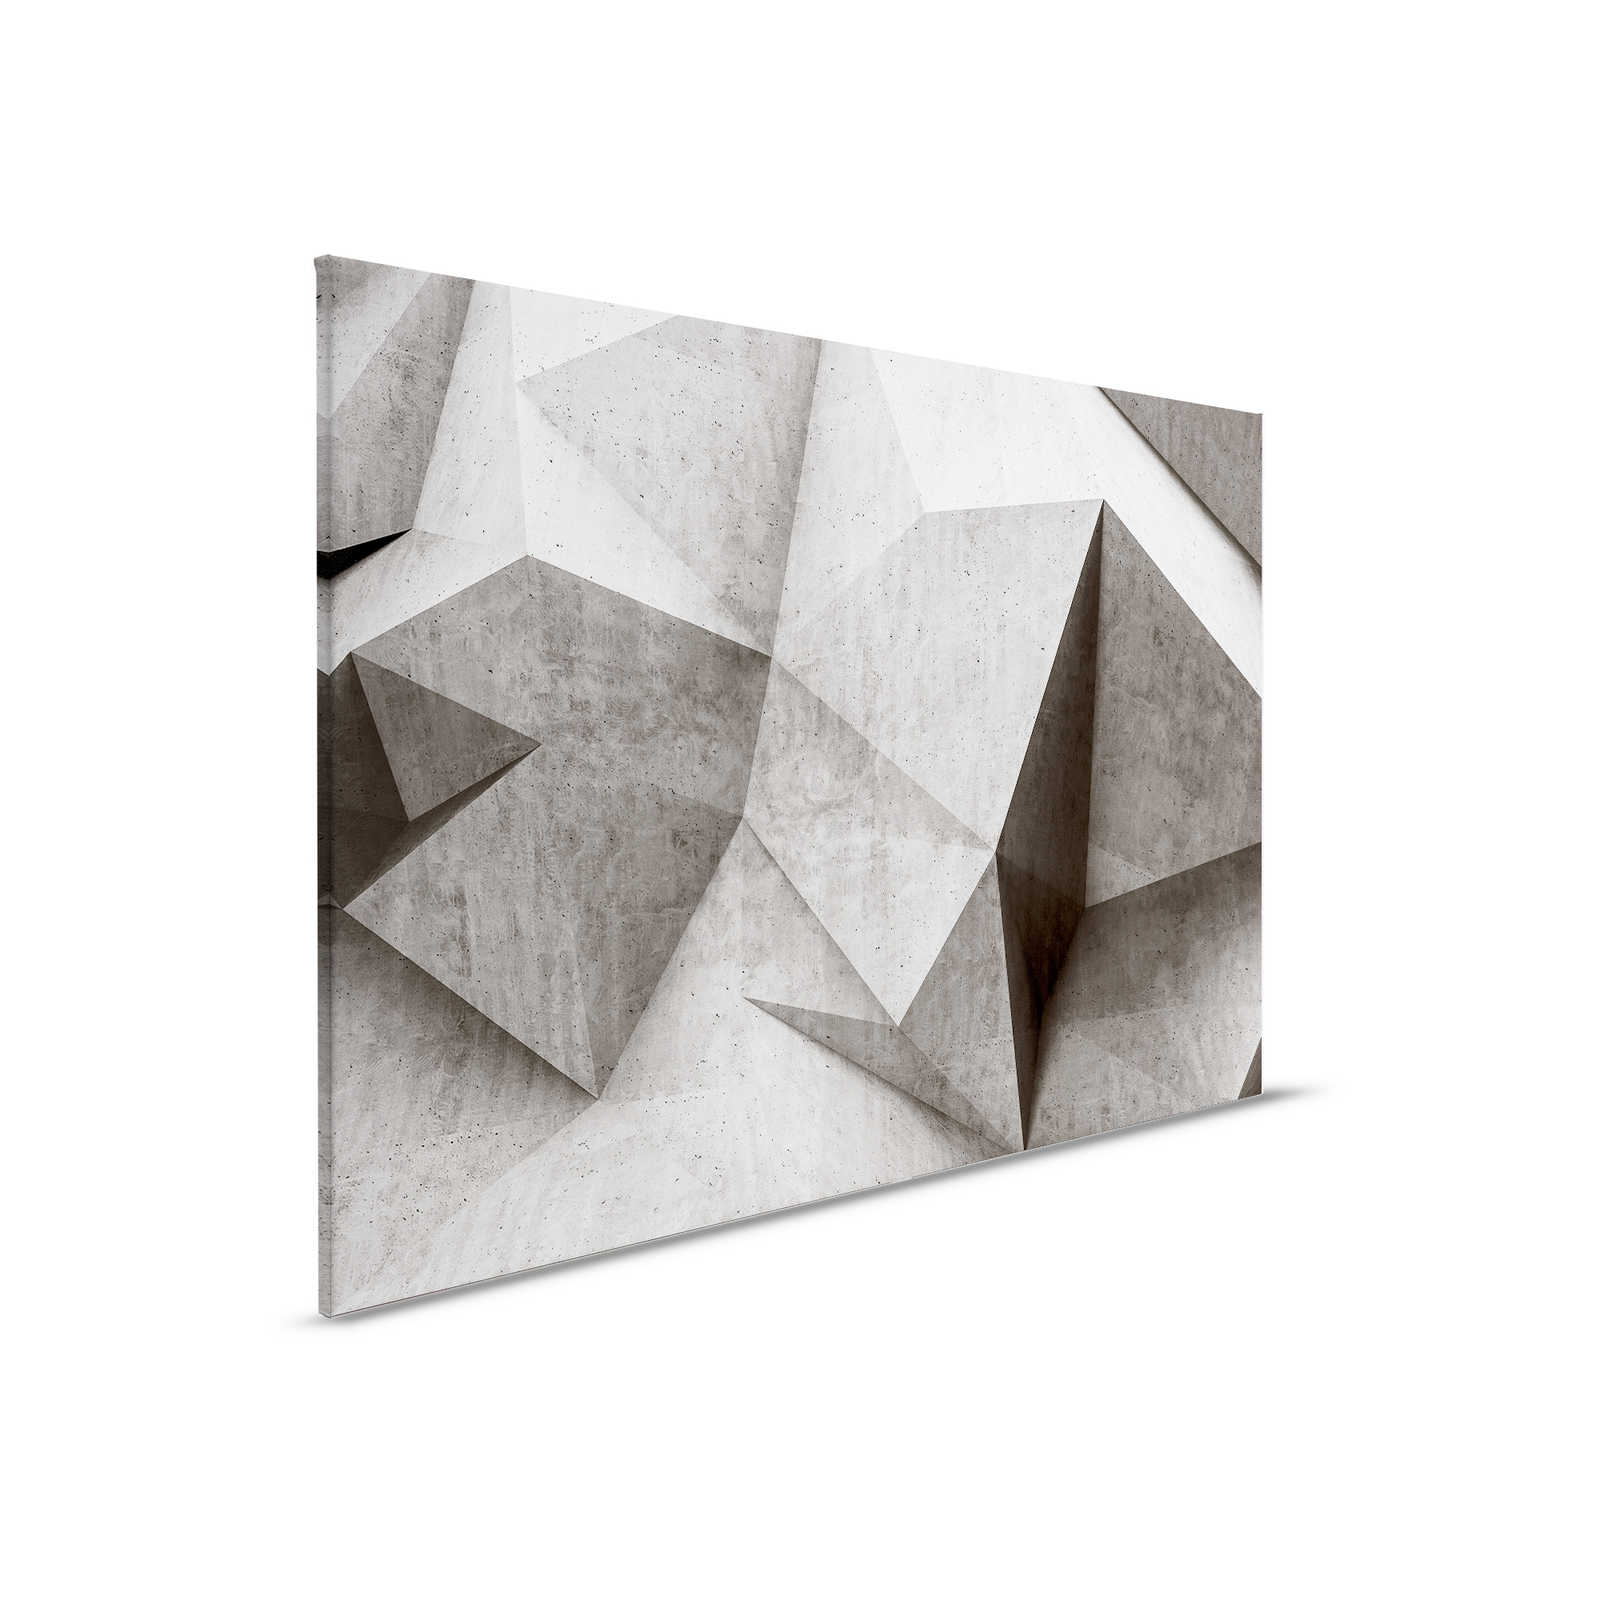 Boulder 1 - Polygones en béton 3D cool toile - 0,90 m x 0,60 m
